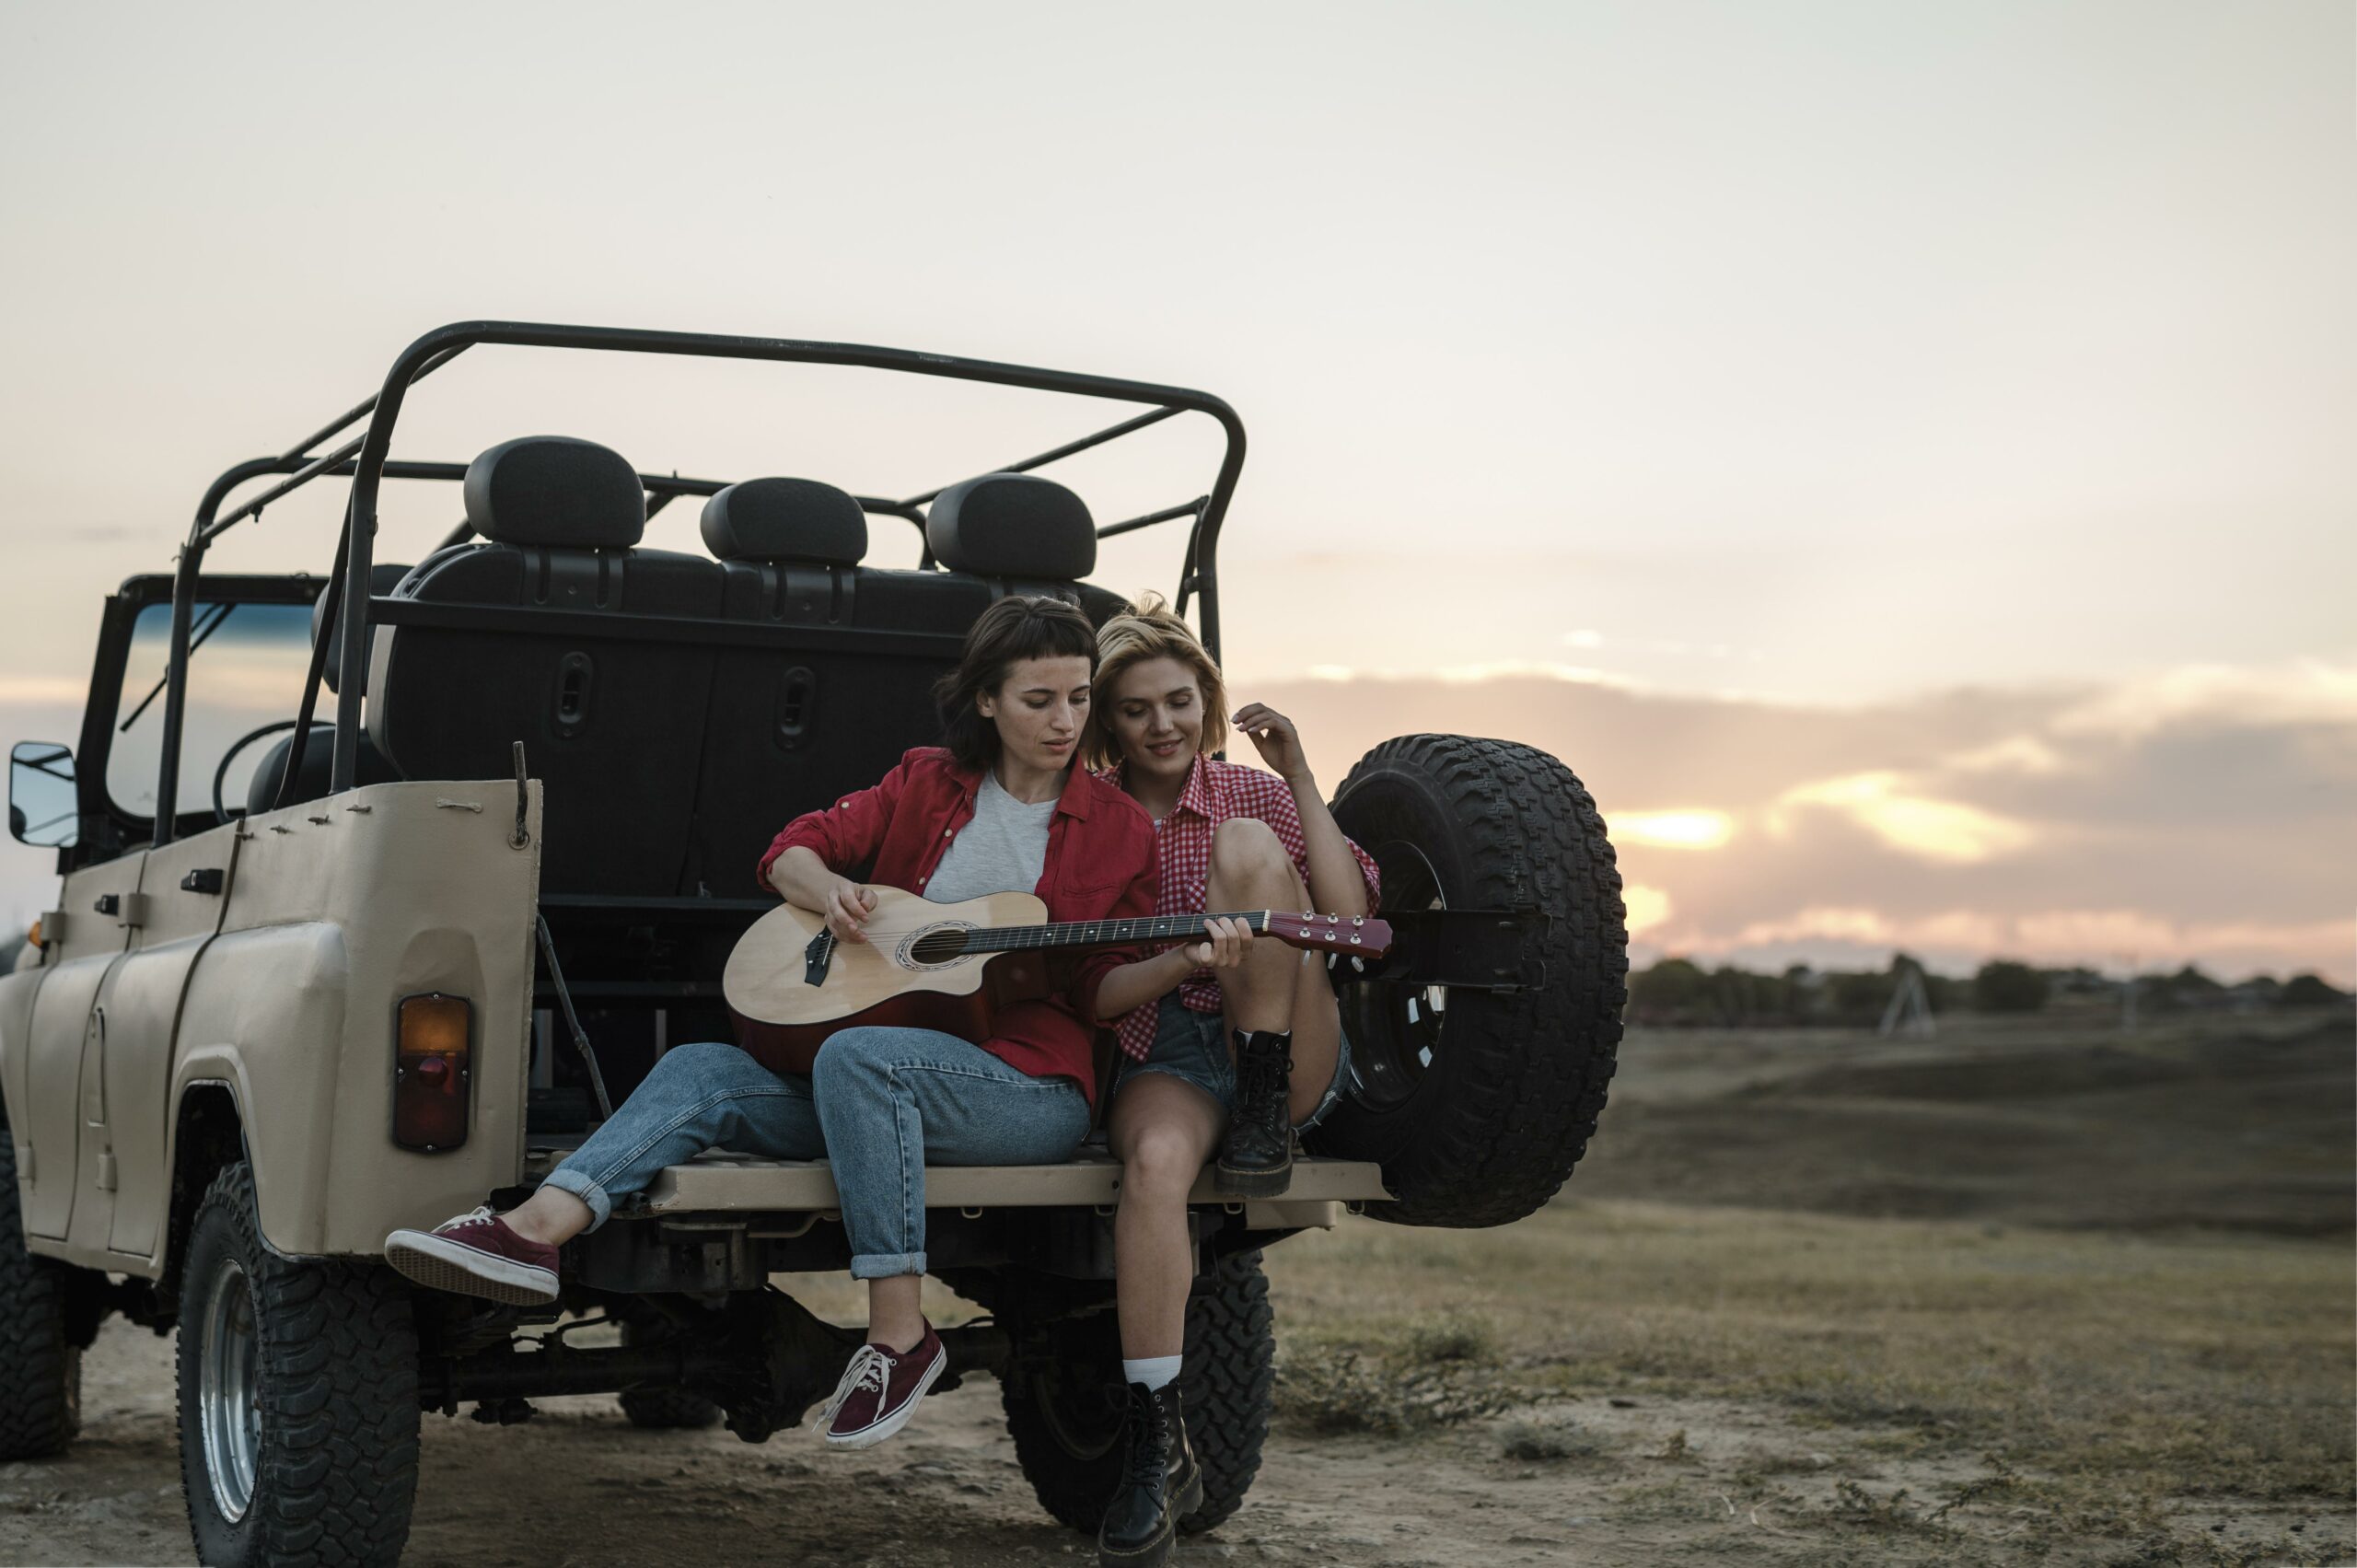 Zwei Frauen sitzen auf einem Fahrzeug, das im Sonnenuntergang auf einem Feld steht, eine Frau spielt dabei Gitarre. (Symbolbild)